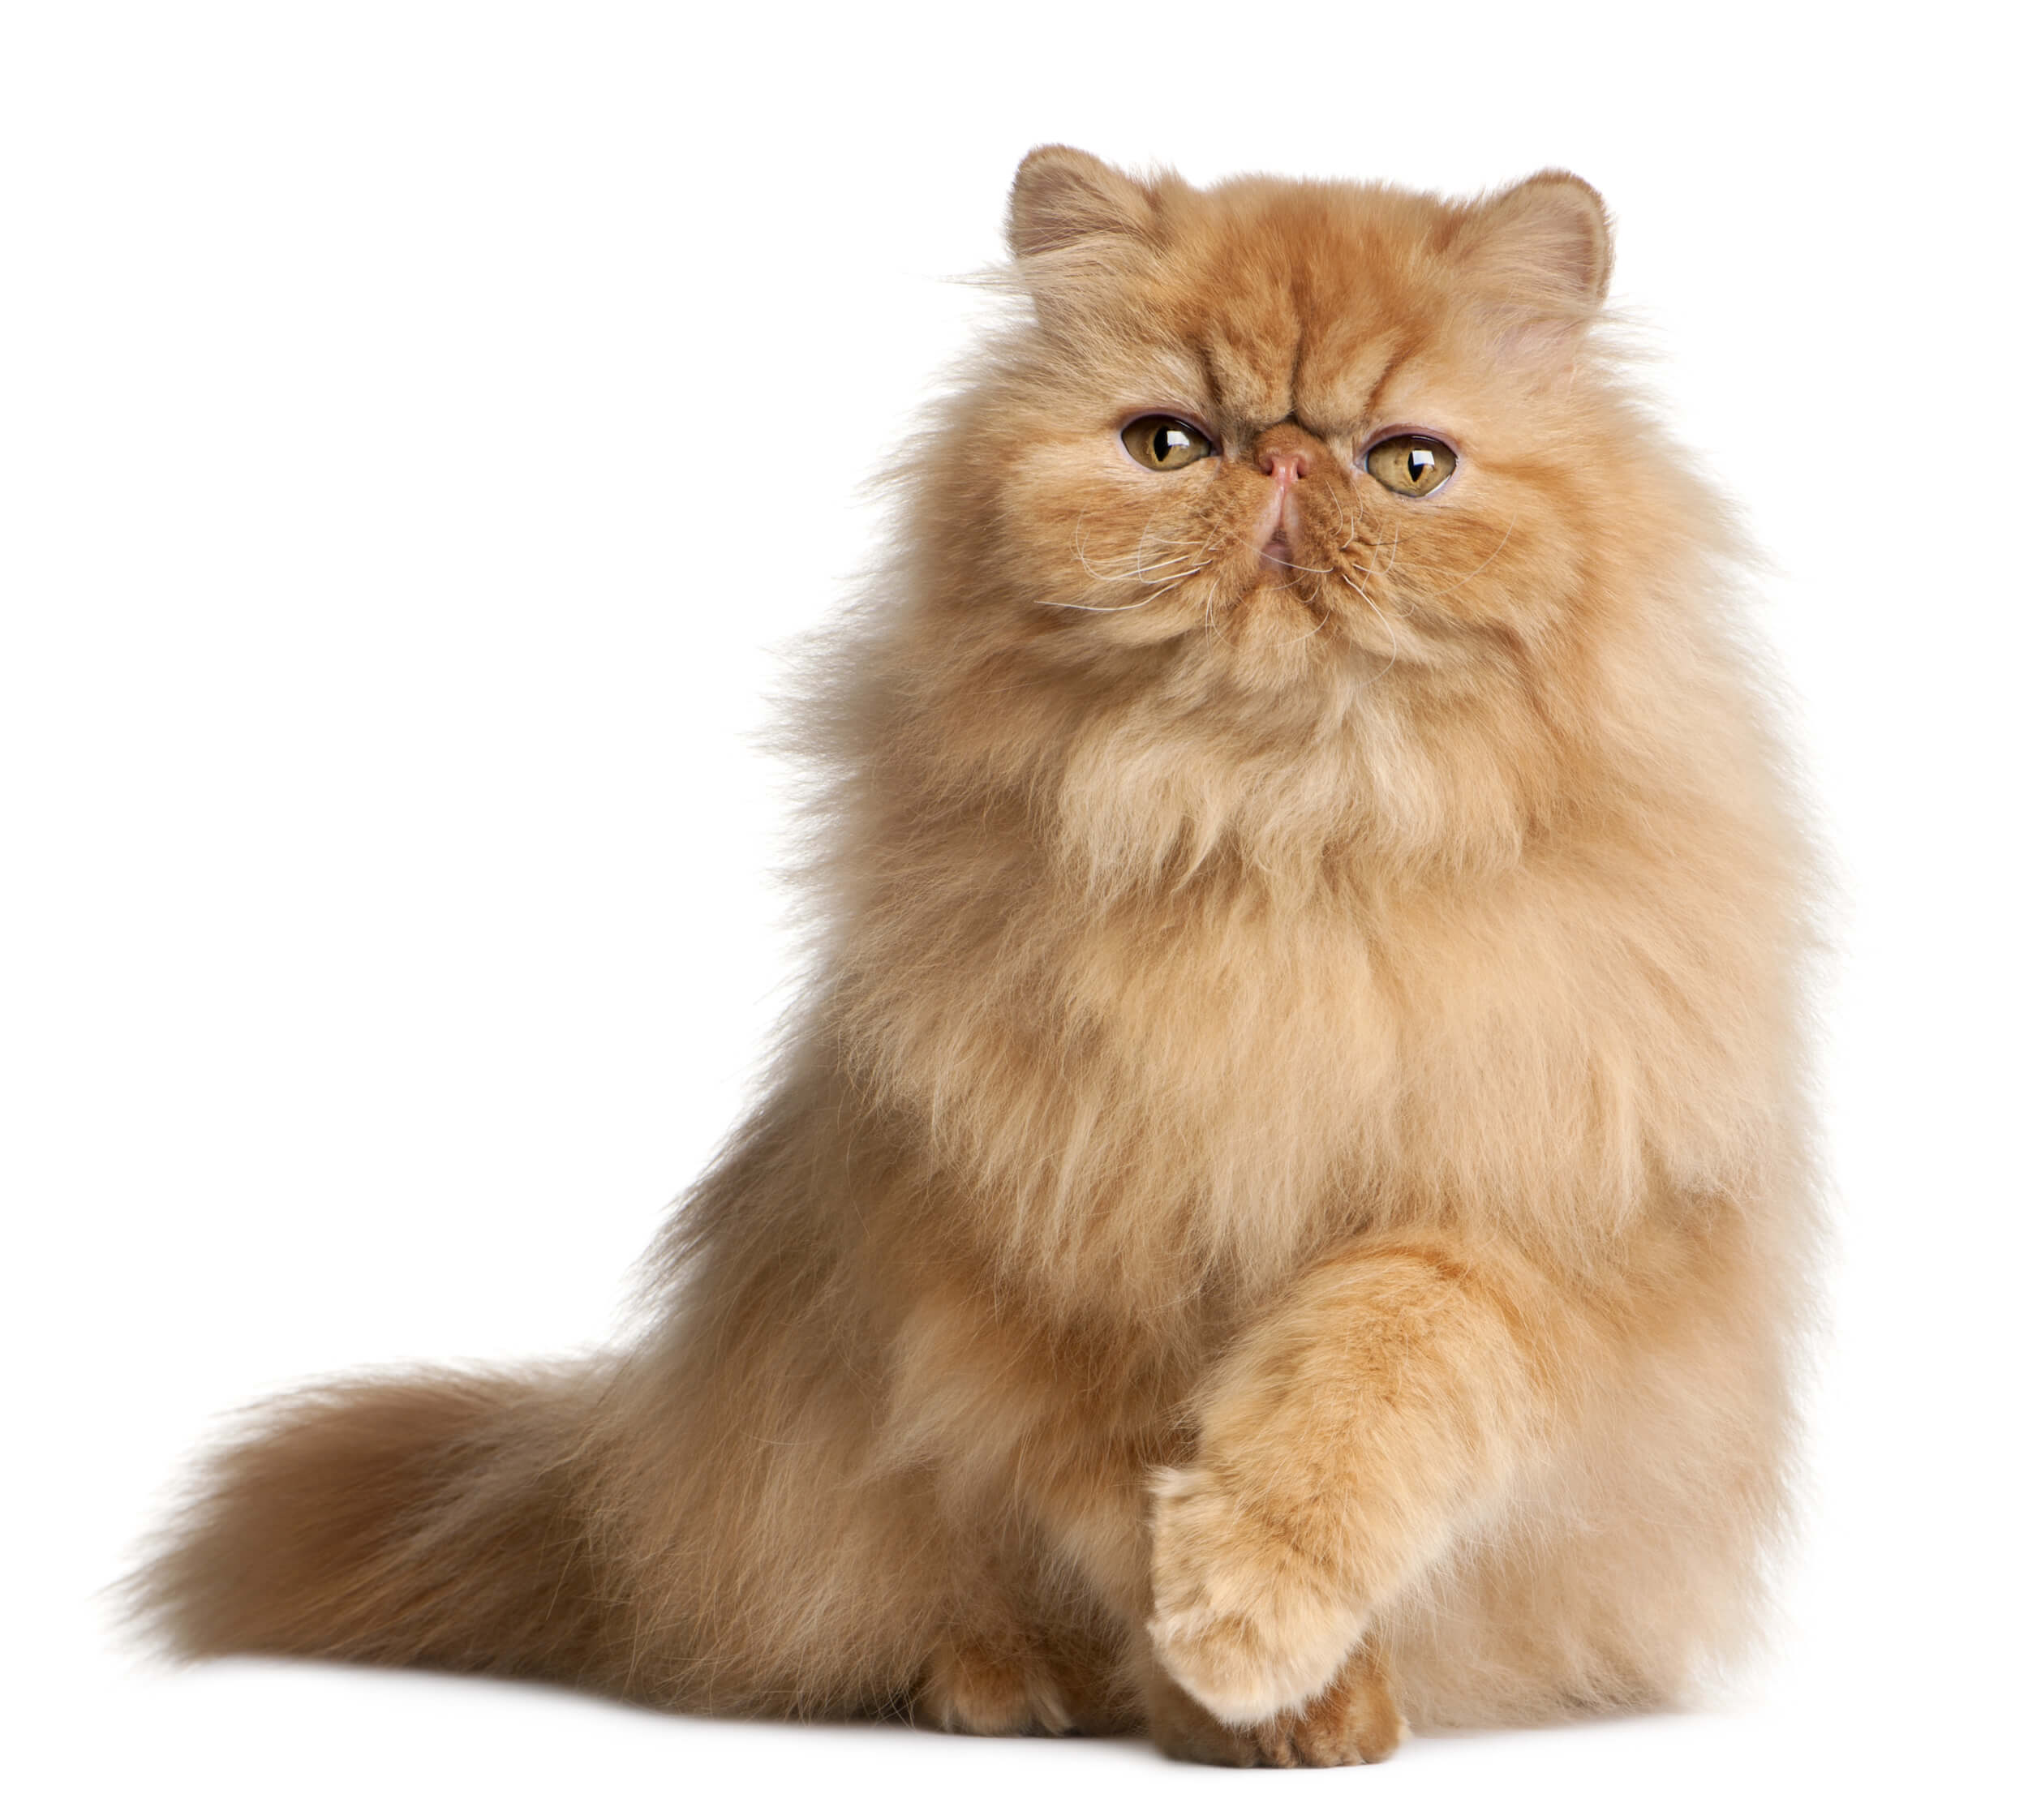 Popular Cat Breeds  Facts & Characteristics of Top Breeds of Cat